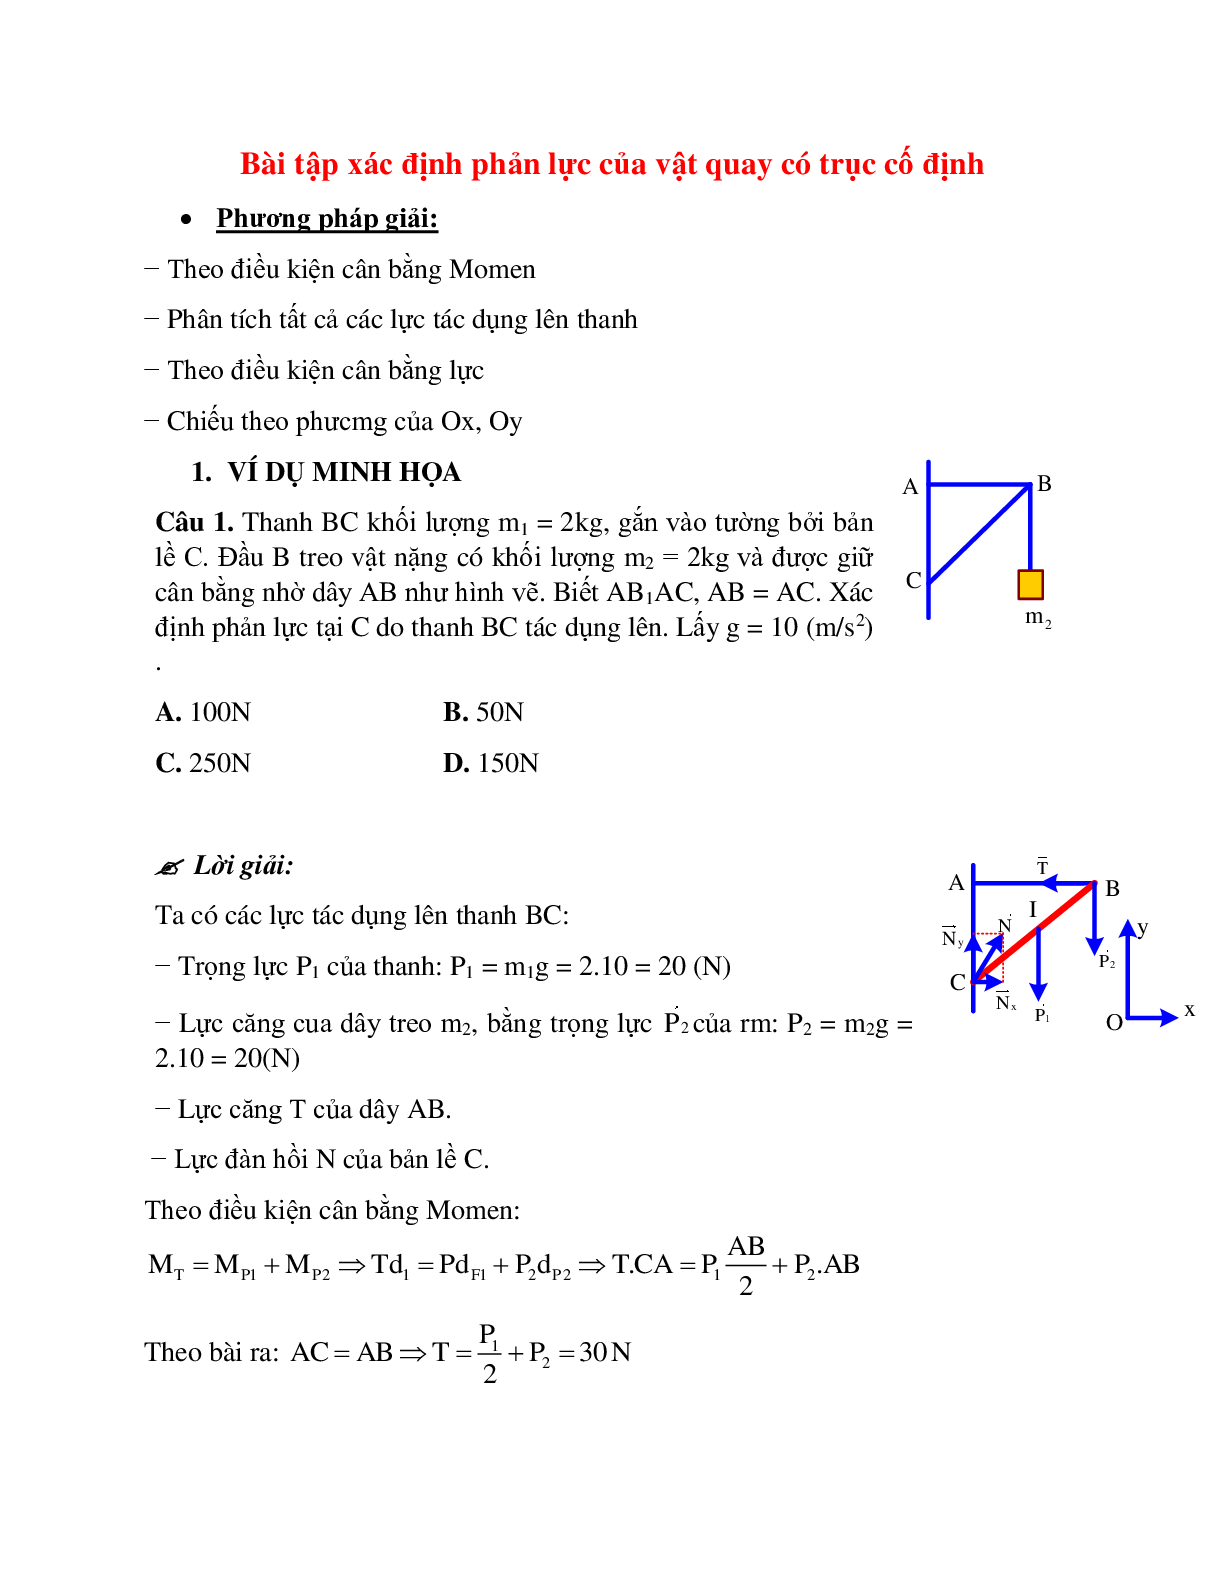 Bài tập về xác định phản lực của vật quay có trục cố định có lời giải (trang 1)